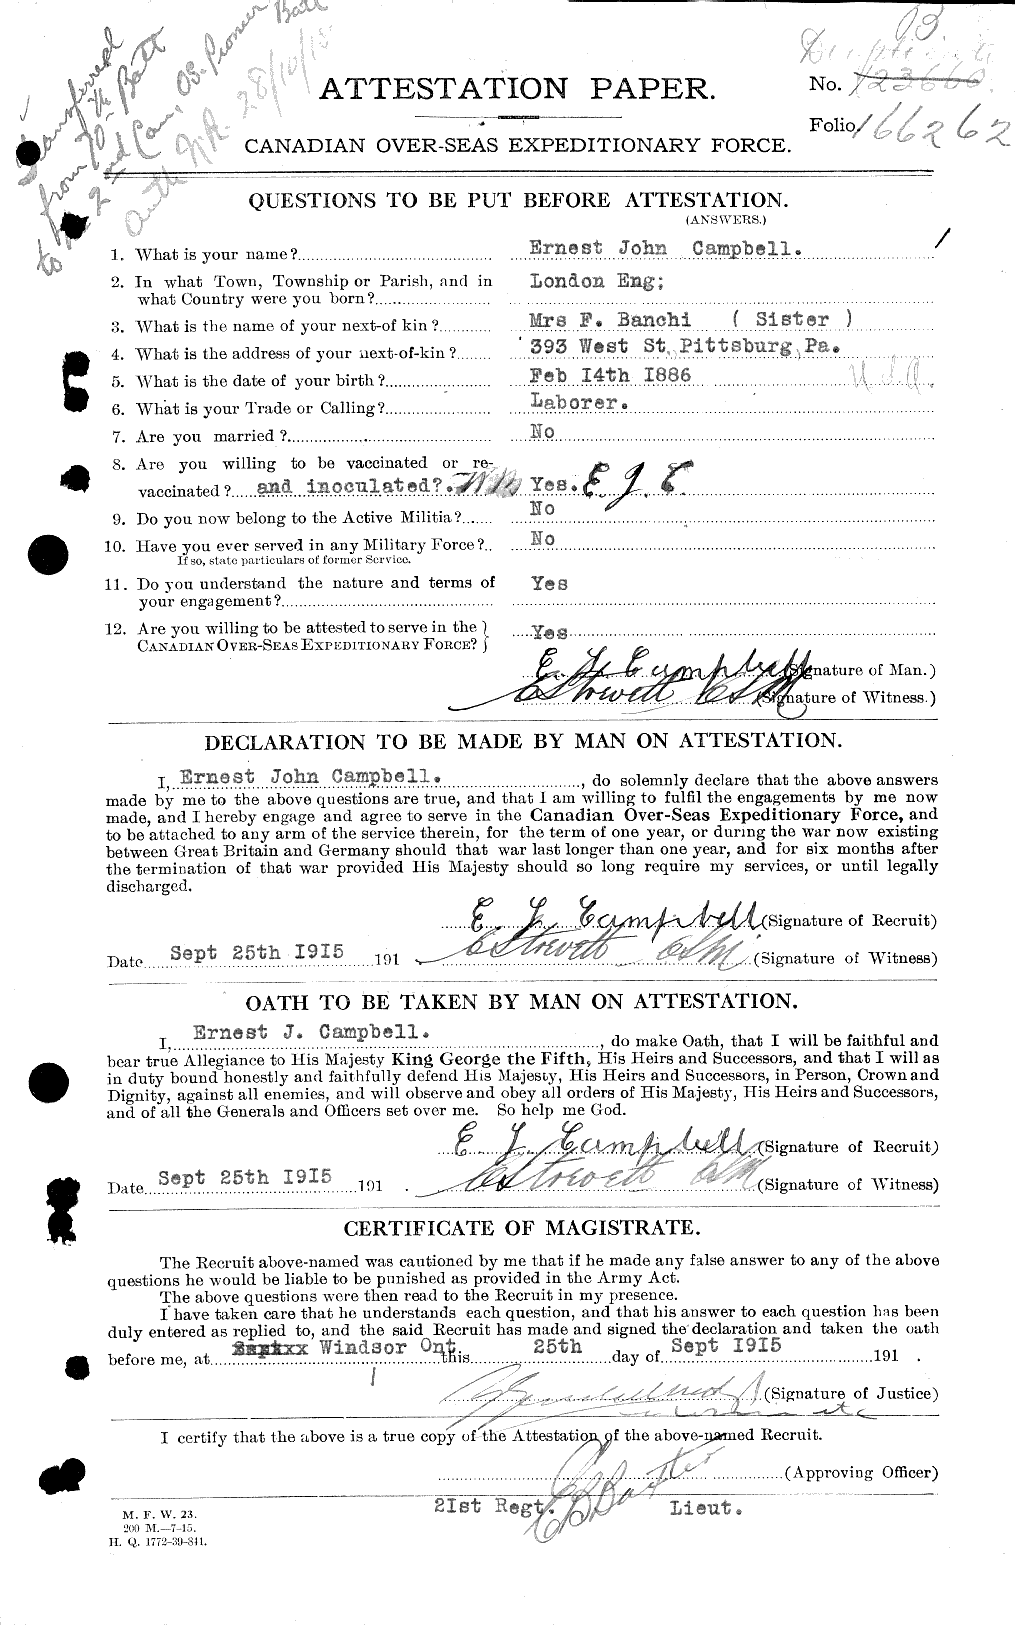 Dossiers du Personnel de la Première Guerre mondiale - CEC 003685a